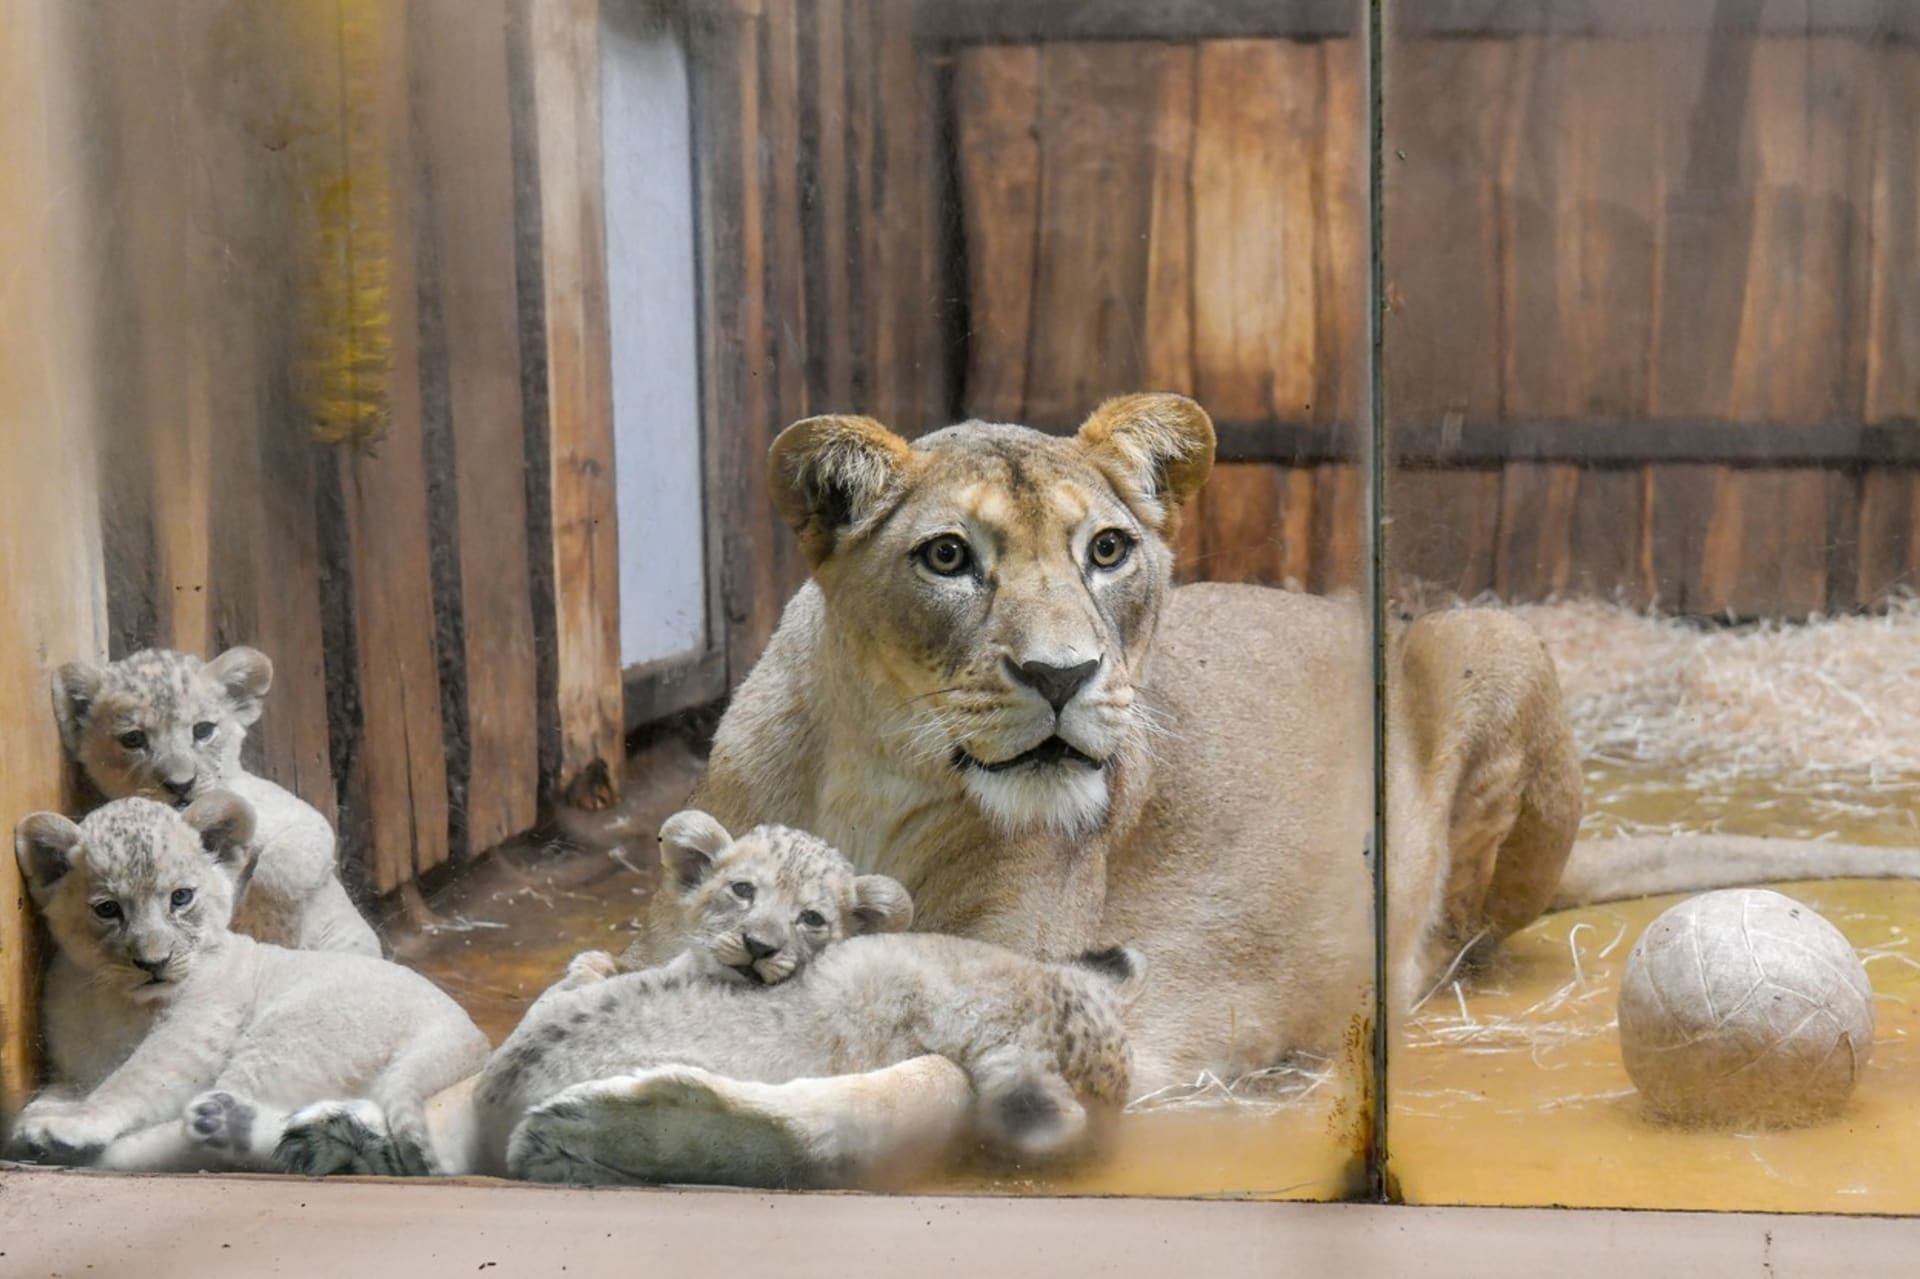 Plzeňská mláďata lva berberského šest týdnů po narození